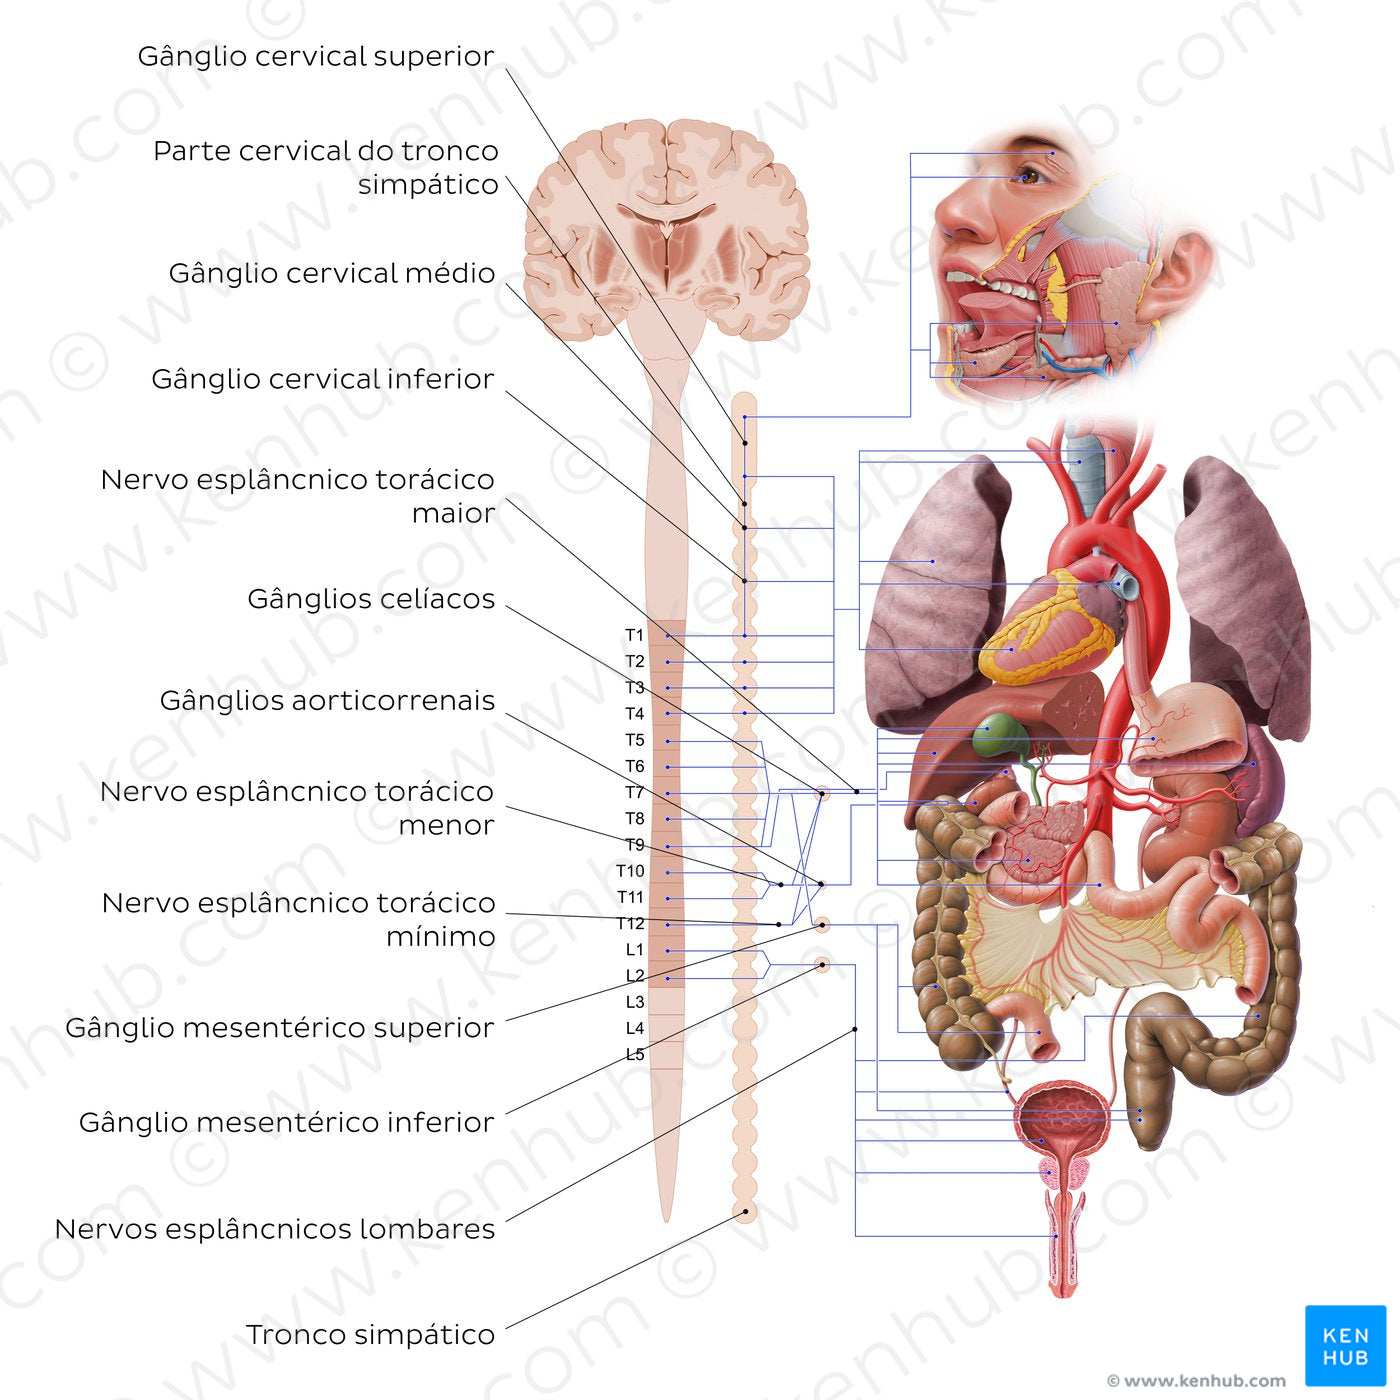 Autonomic nervous system - sympathetic nervous system (Portuguese)